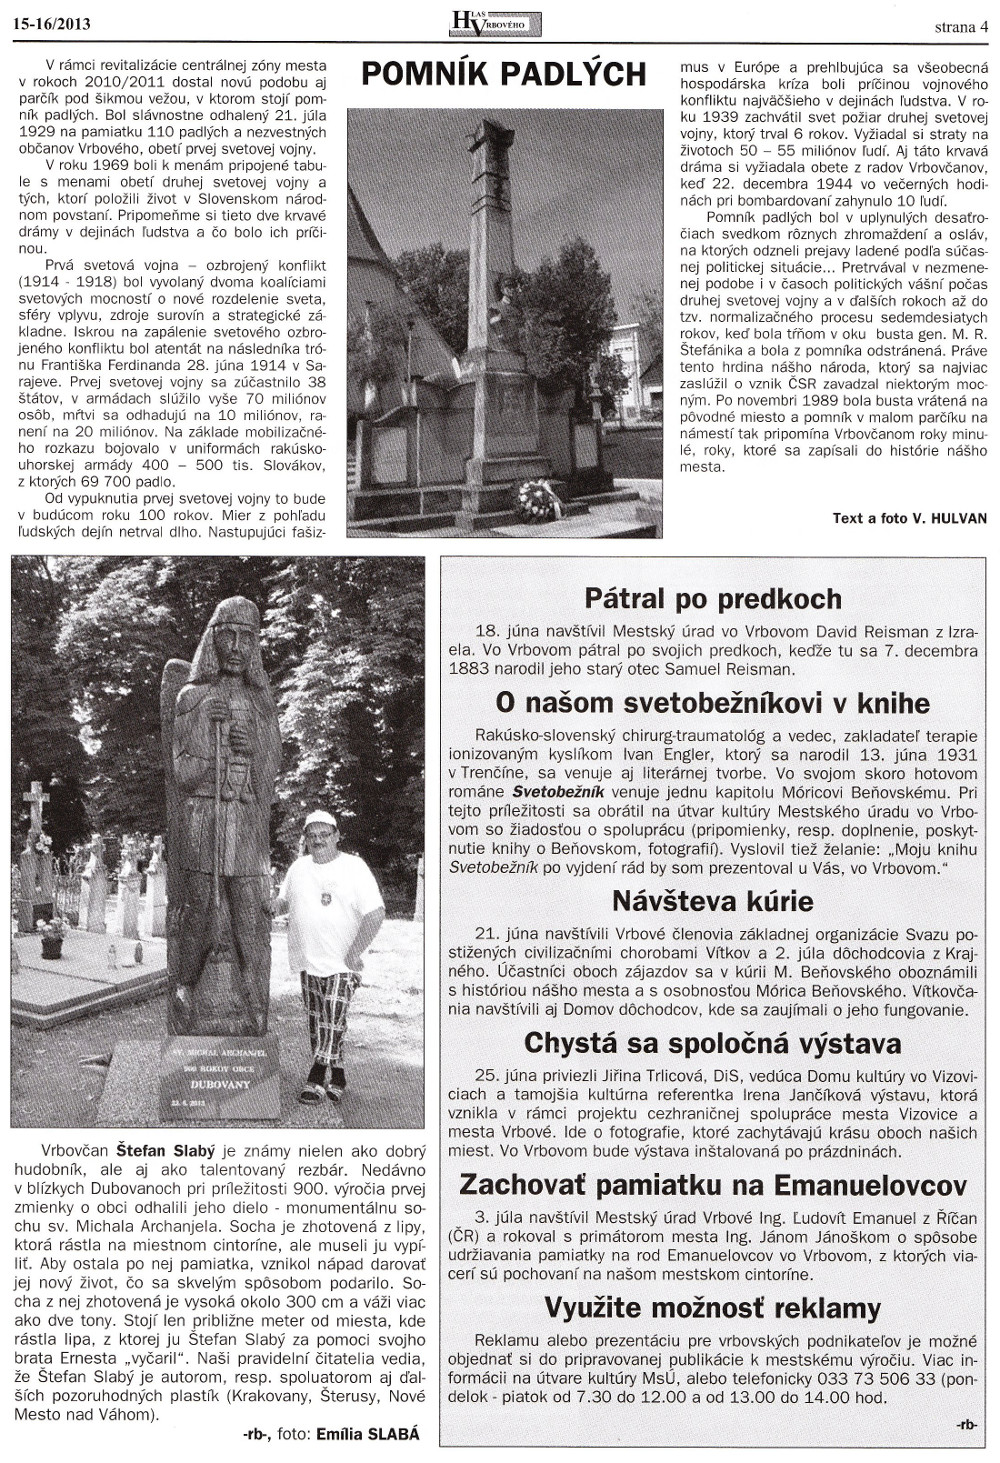 Hlas Vrbového 16/2013, strana 4